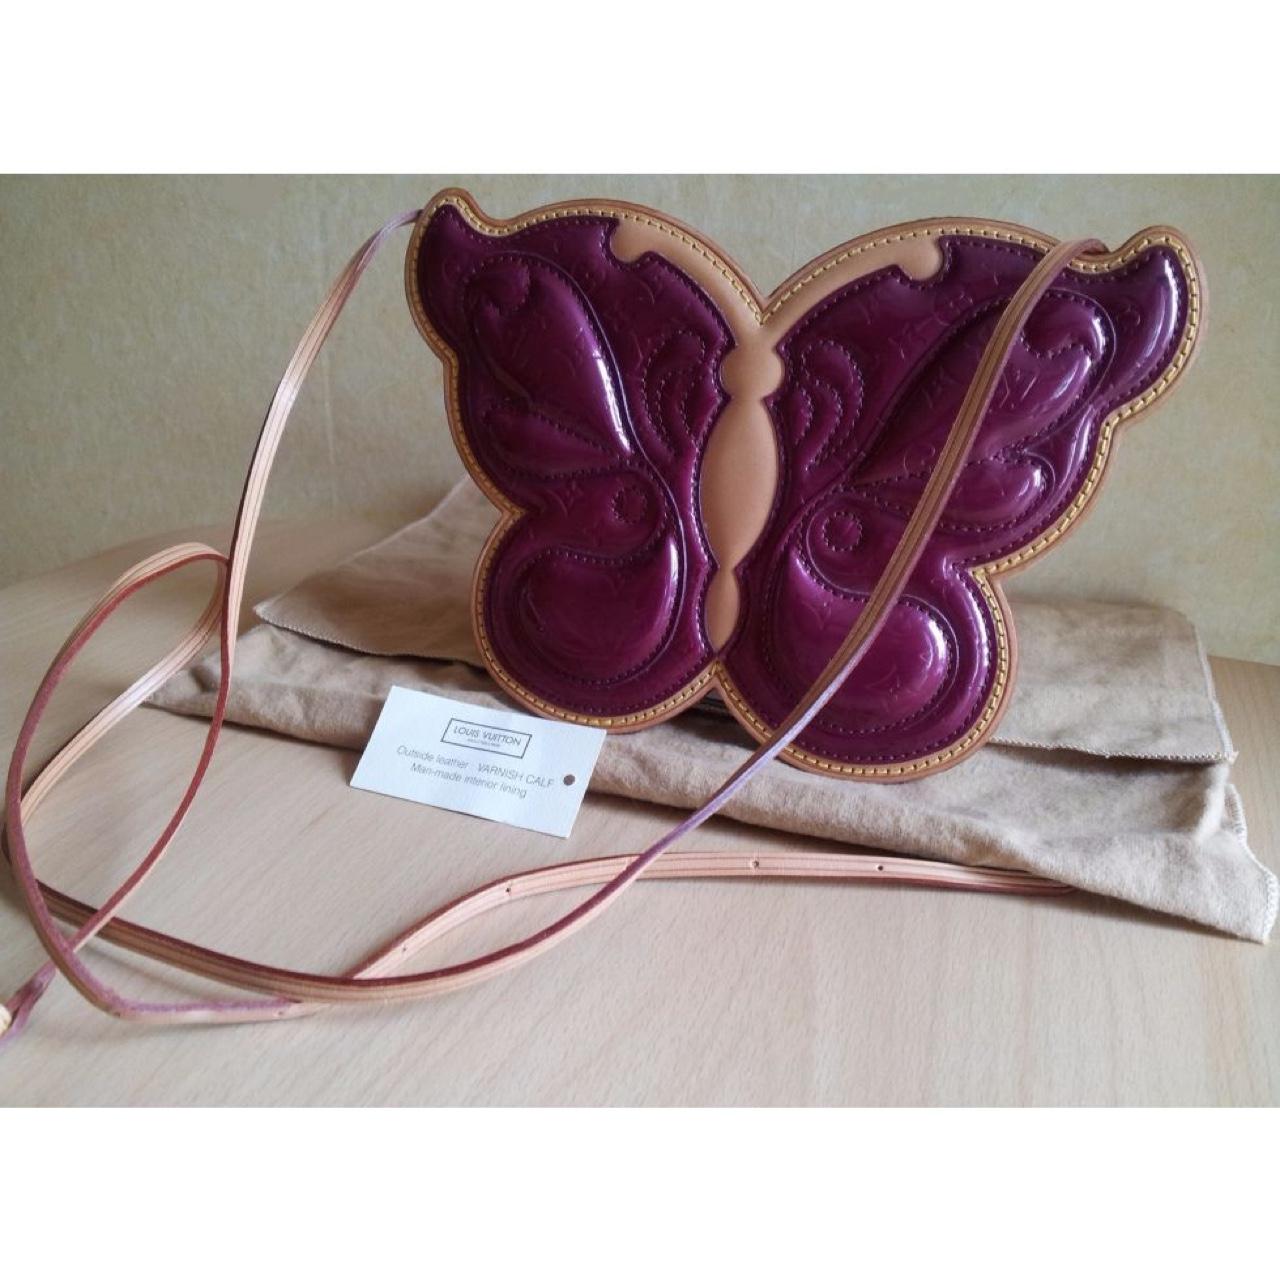 Amazing LOUIS VUITTON's conte de fées butterfly bag - Depop